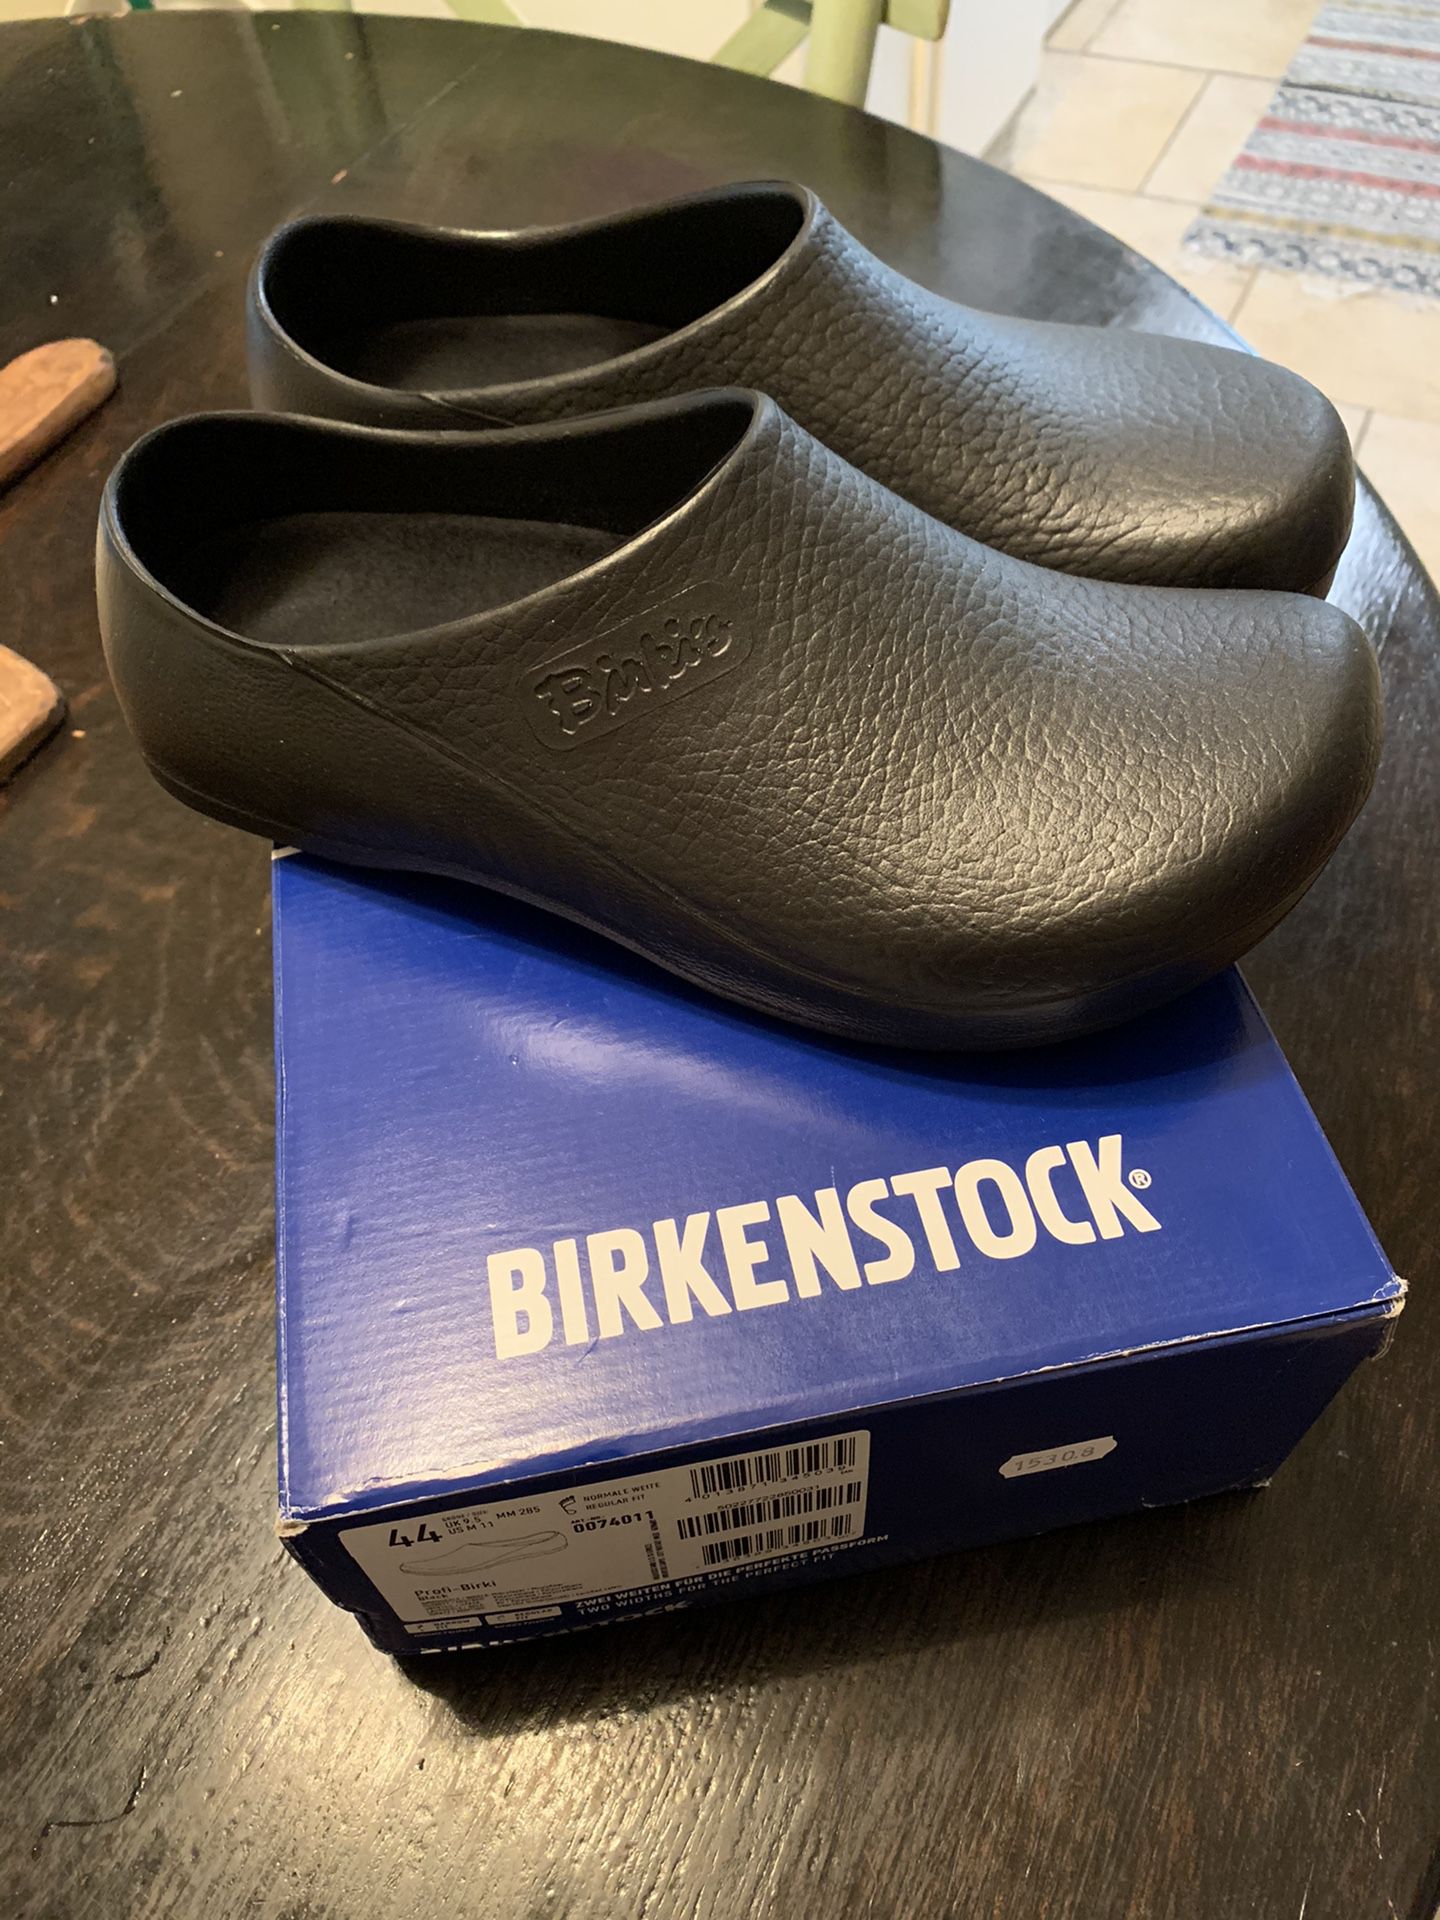 Birkenstock Chef Shoes: 11